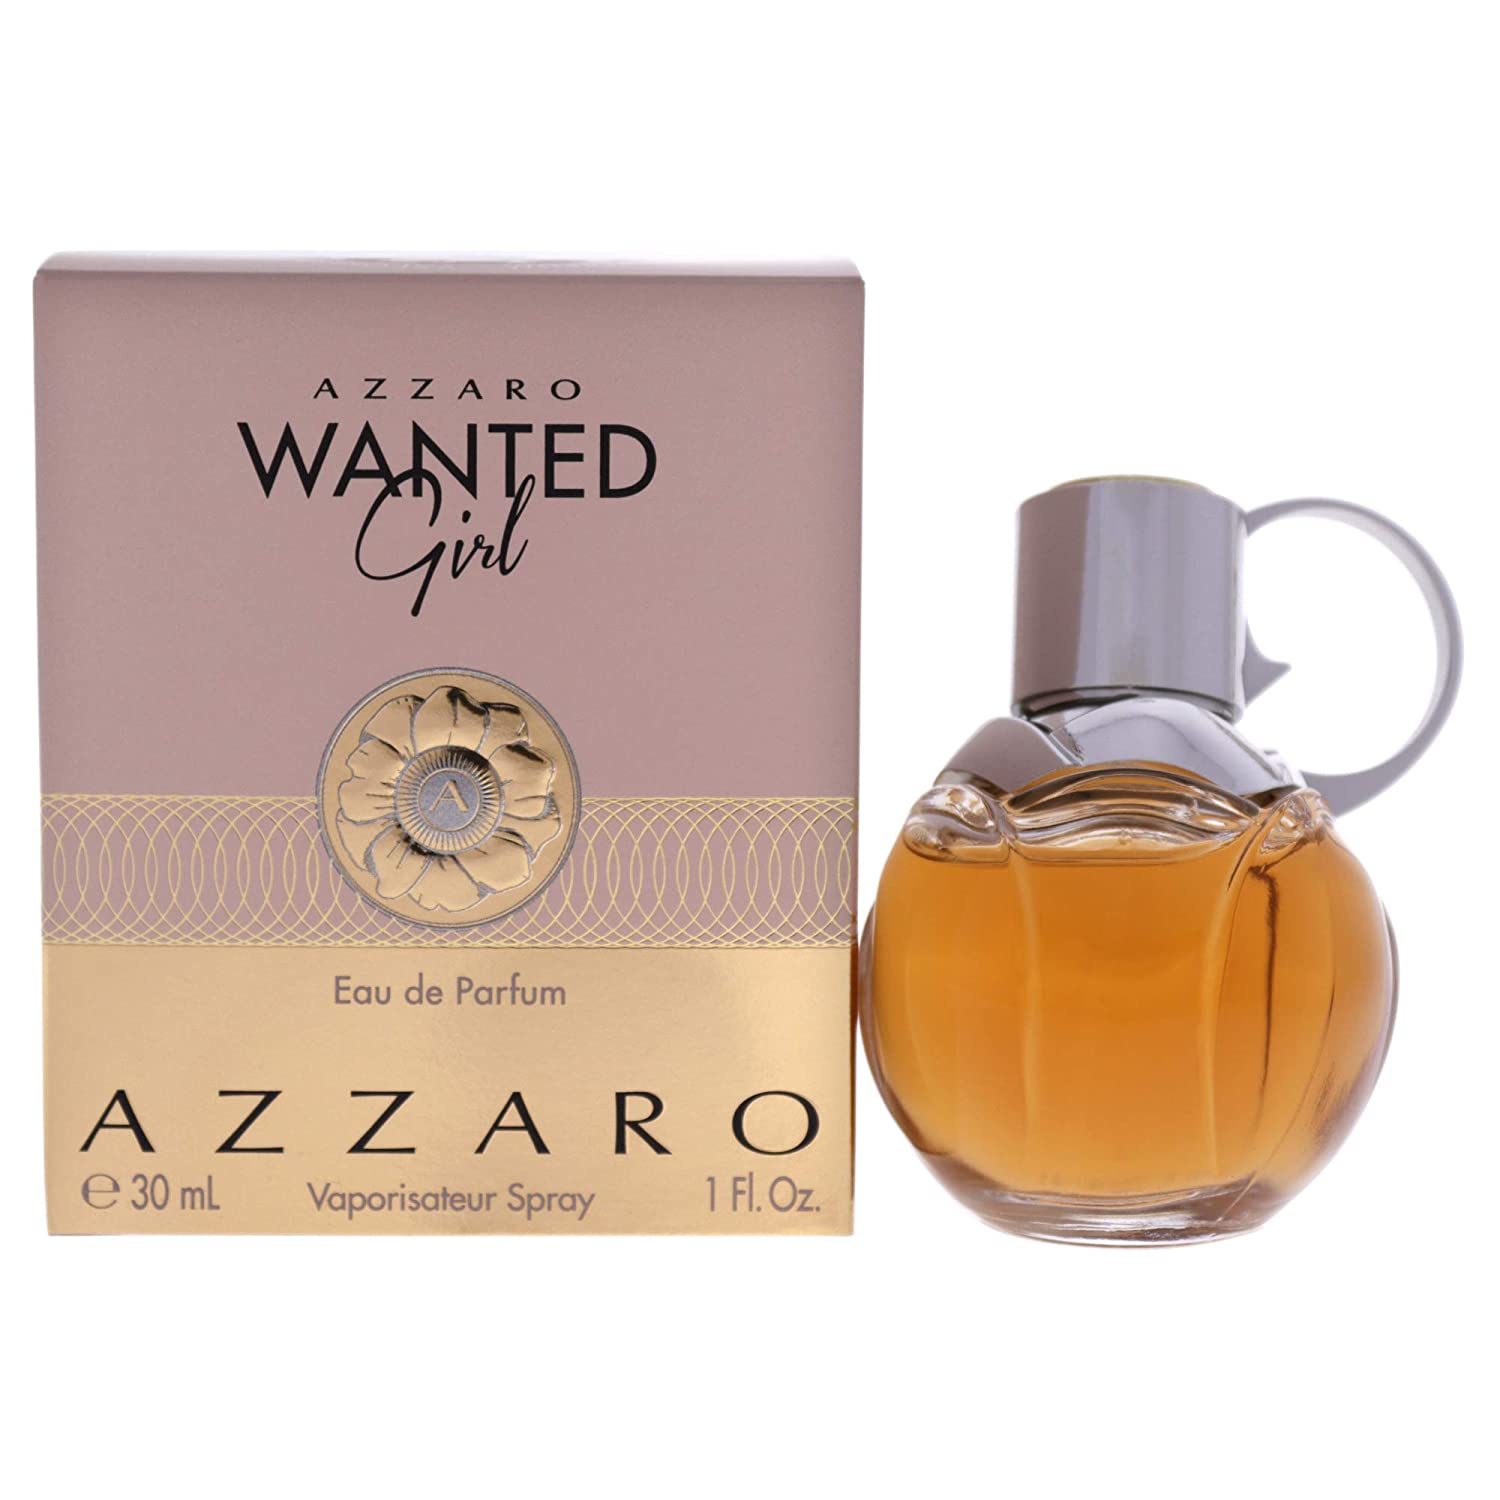 New Azzaro Wanted Girl Eau de Parfum - Perfume for Women